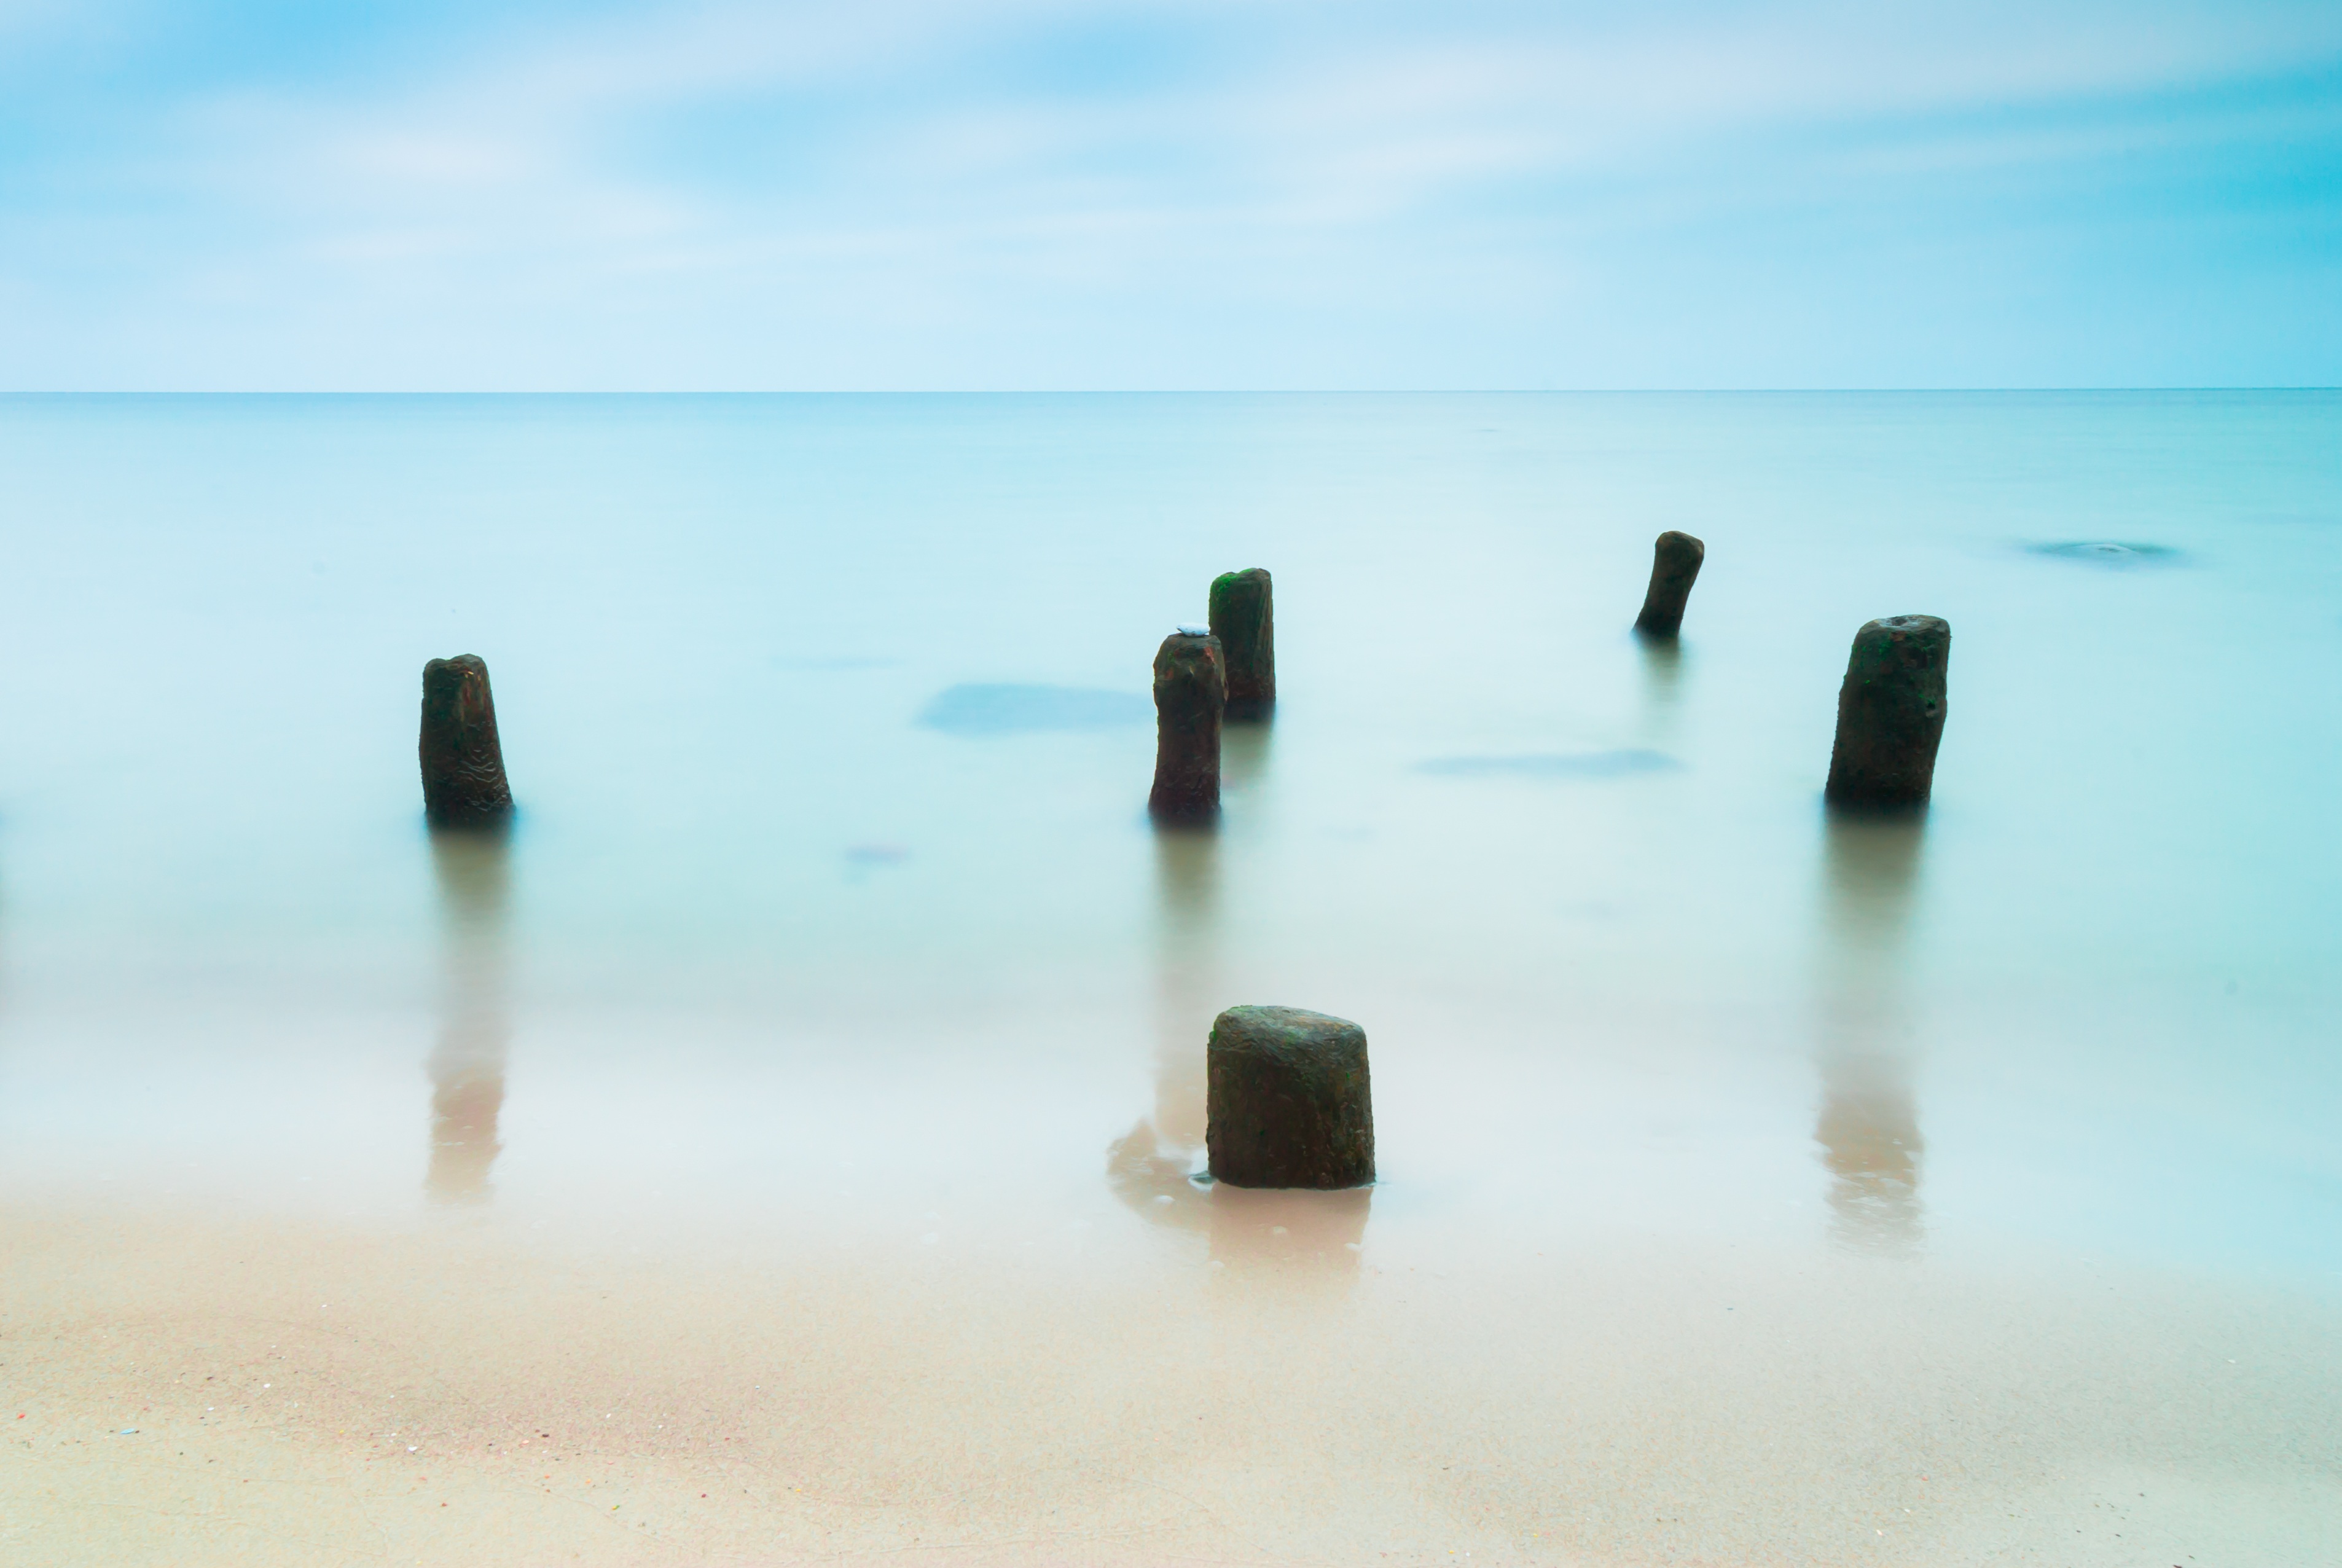 Побережье балтийского моря с камнями · бесплатная фотография